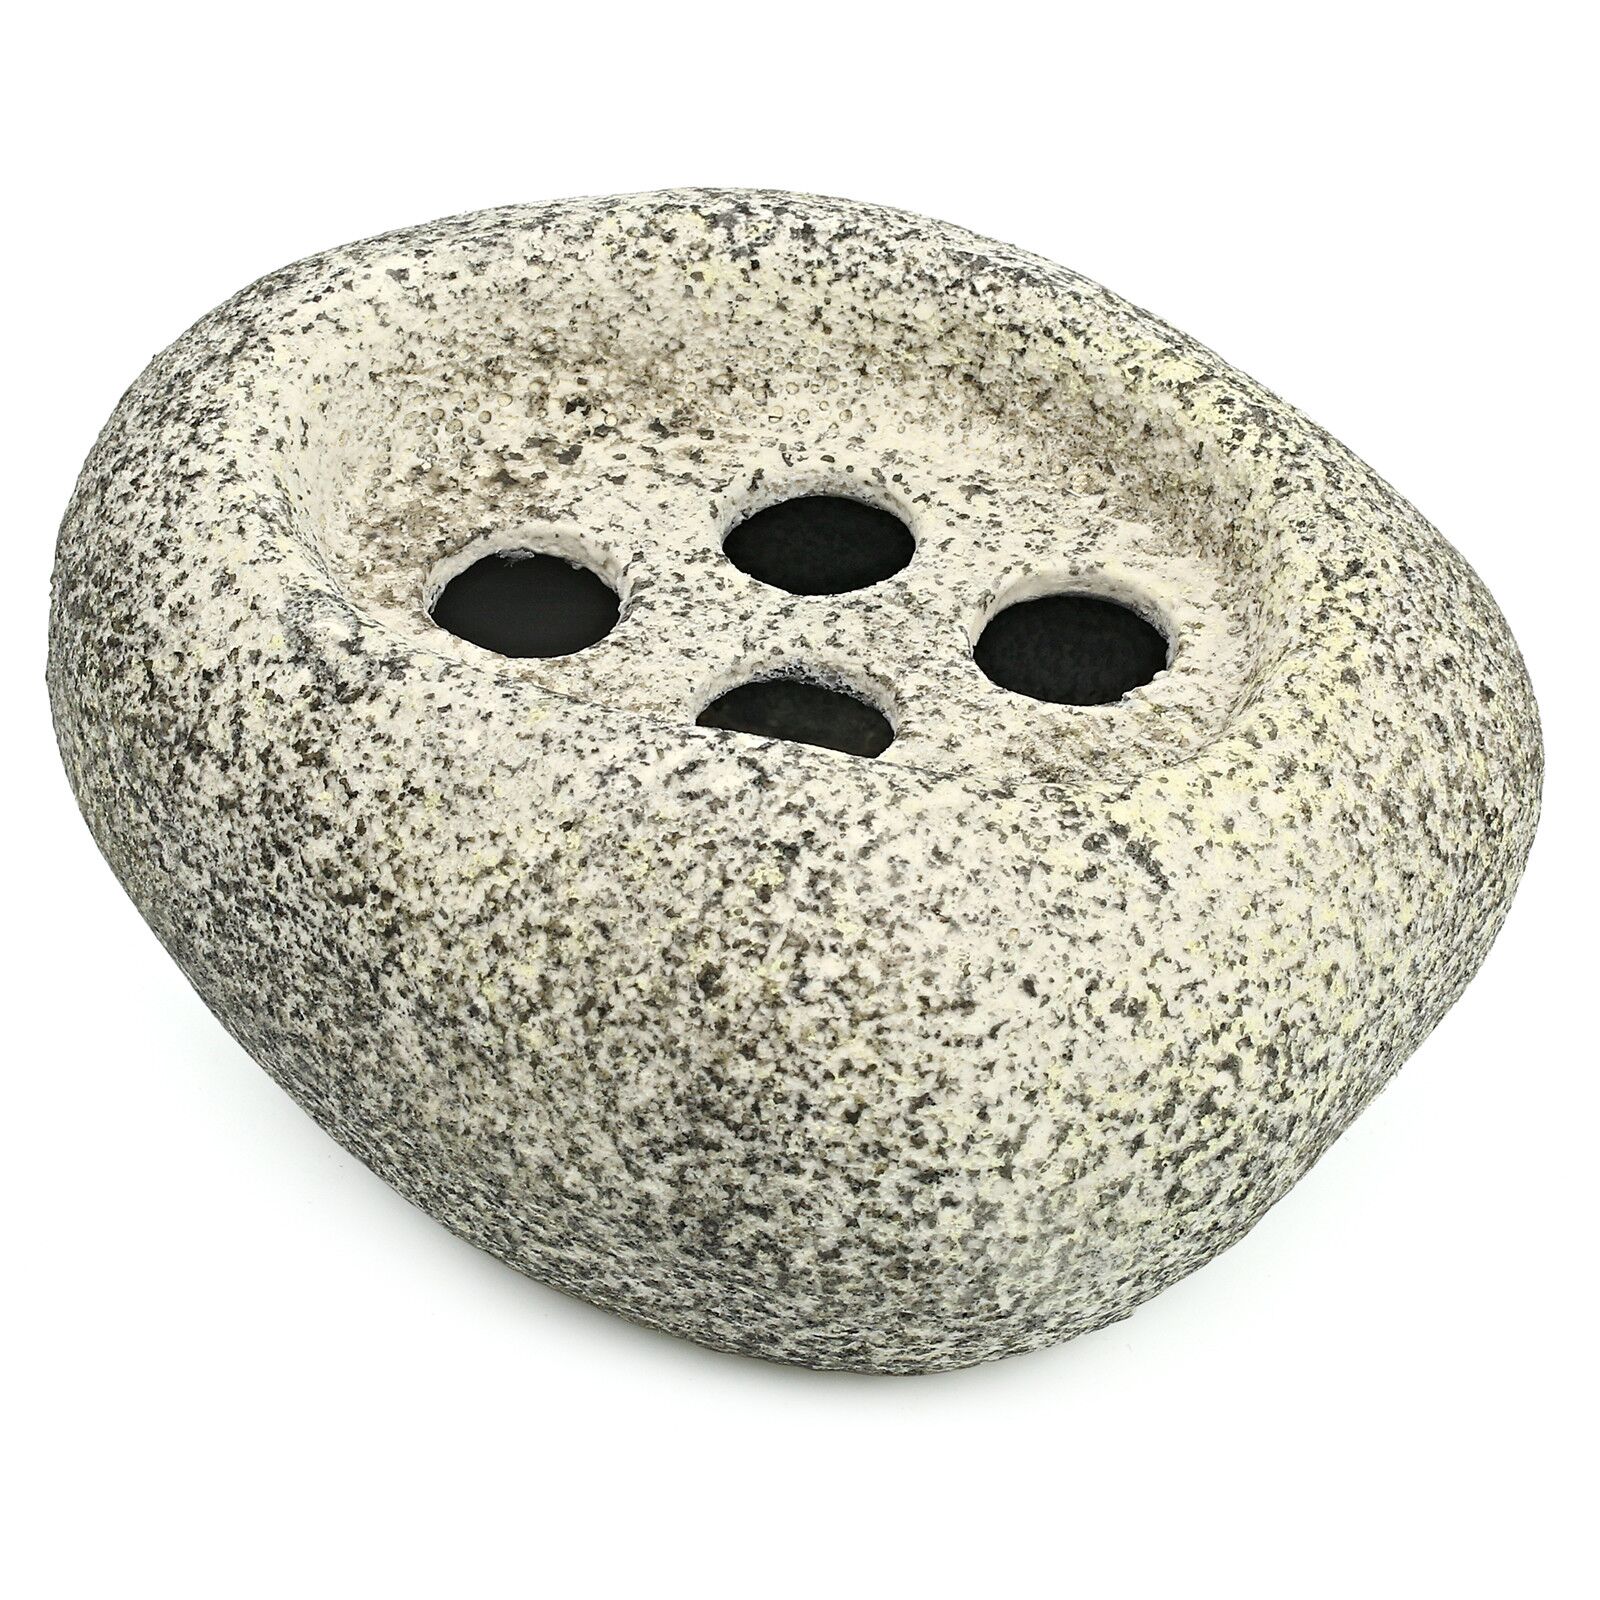 ISTA - Water Plant Rock - Ceramic